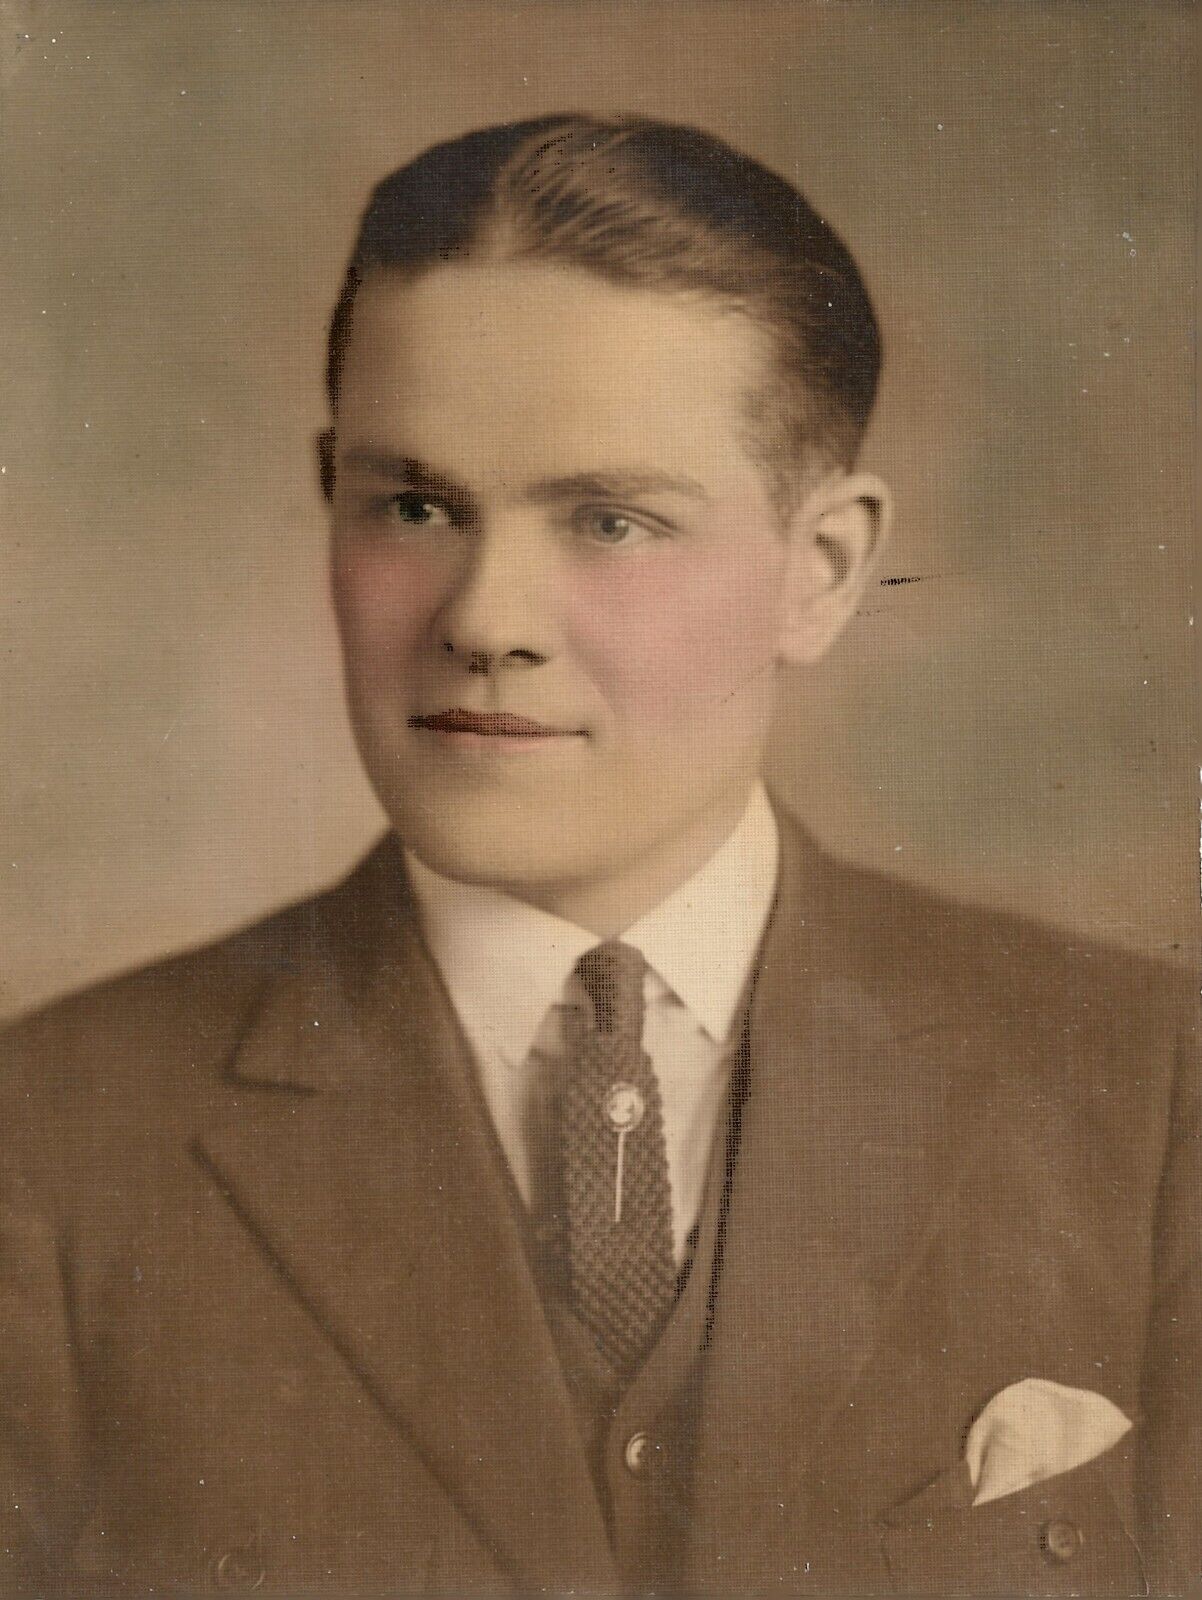 Man Photograph Portrait Vintage Fashion Suit Tie Hand Tinted 1920s 6 x 8